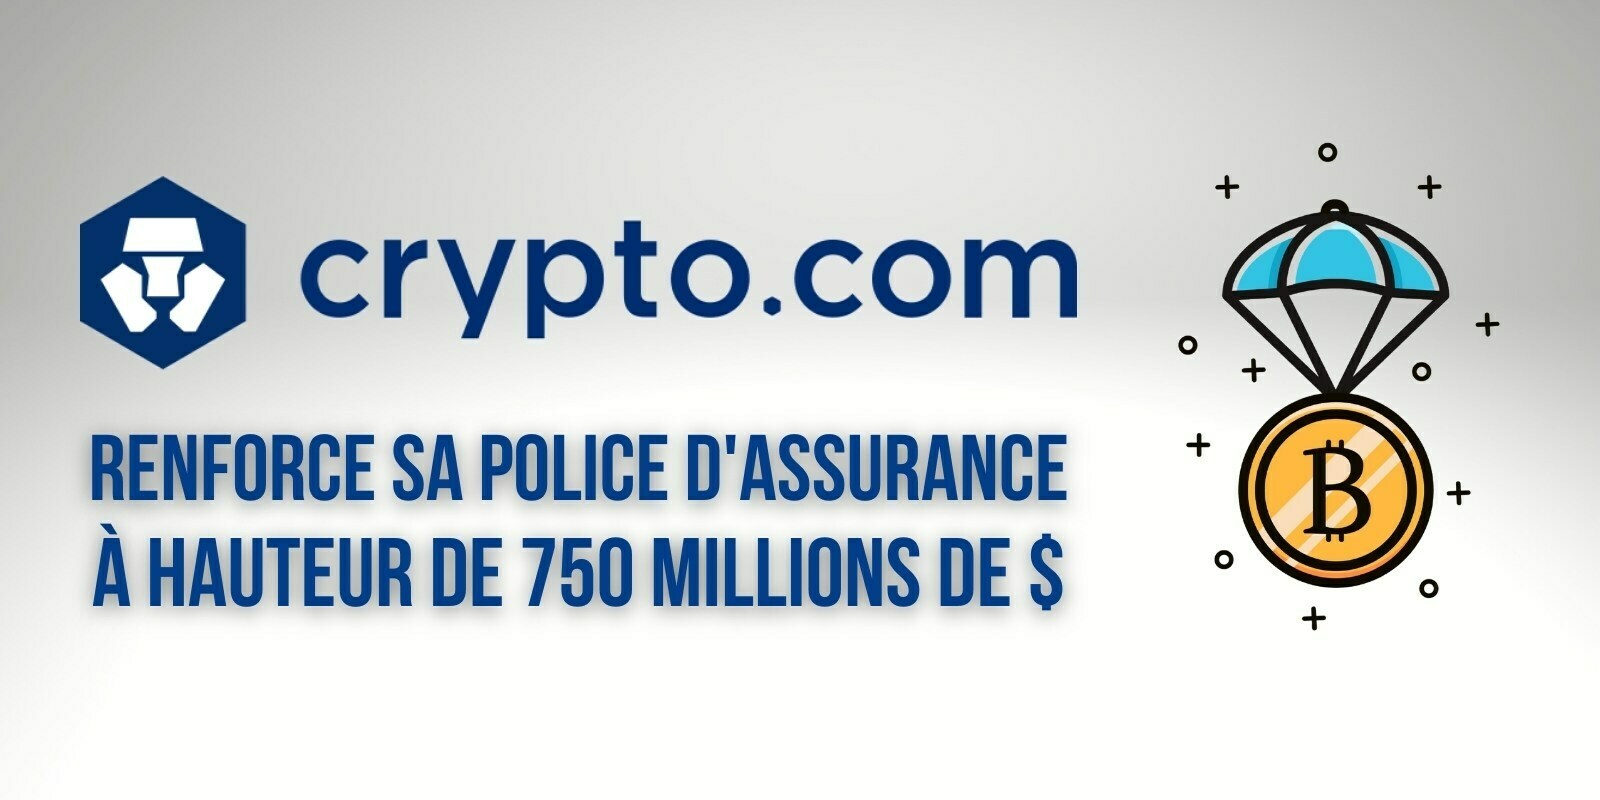 Crypto.com (CRO) renforce sa police d'assurance et protège maintenant 750 millions de dollars de cryptomonnaies